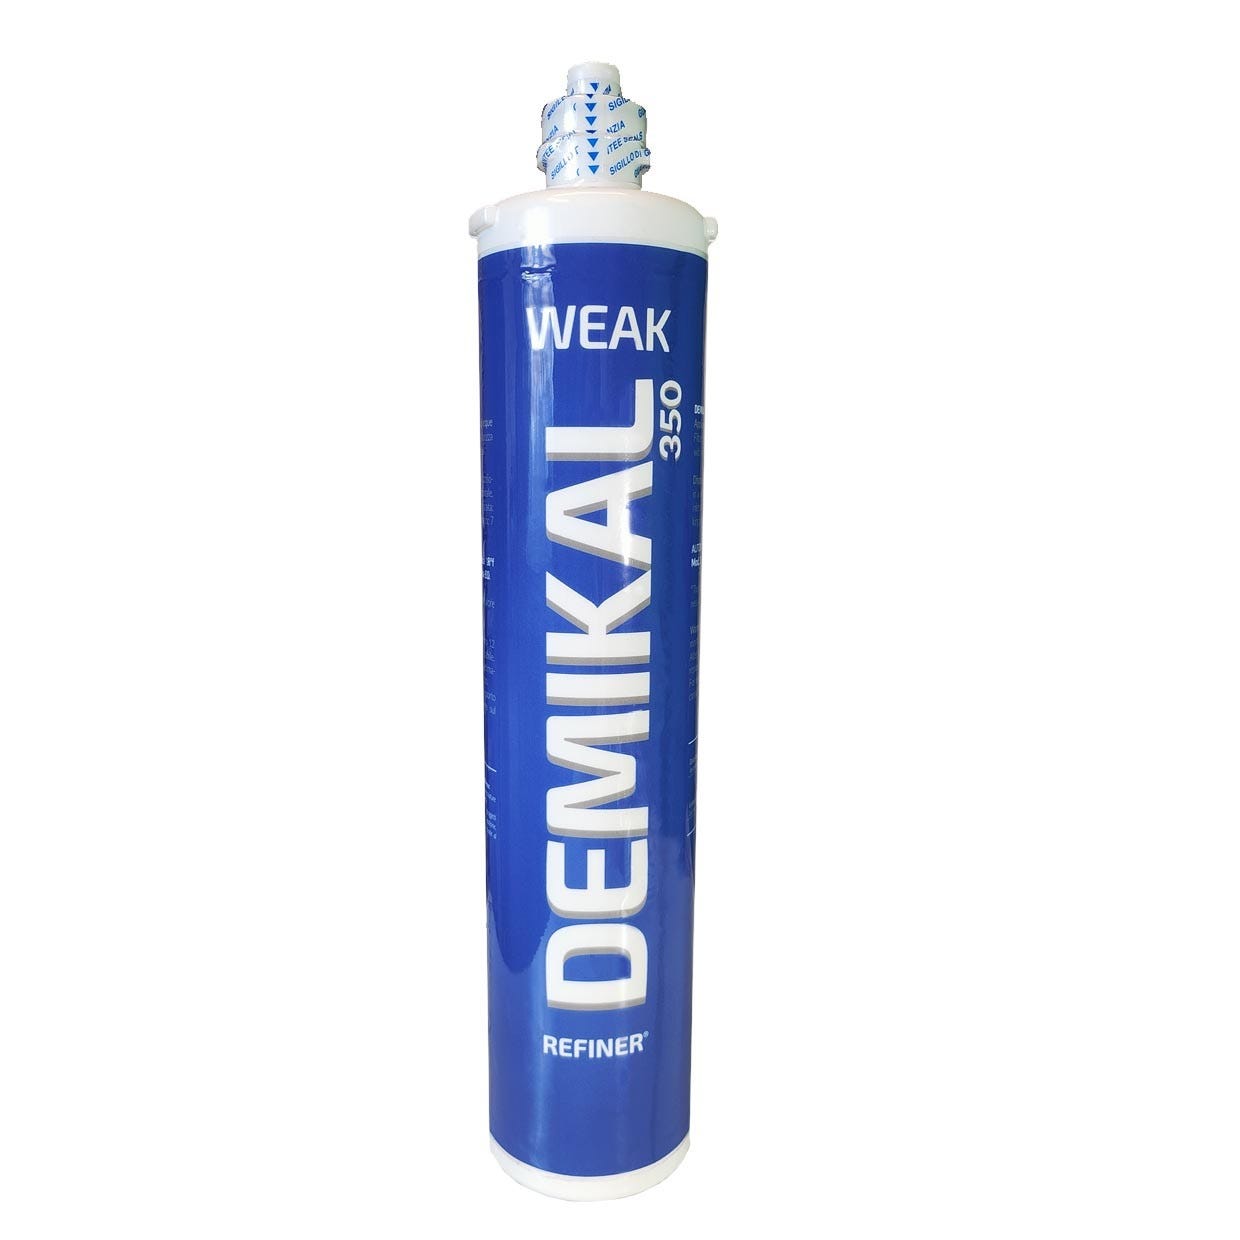 Filtre Demikal Weak 350 avec résines cationiques faibles pour la réduction  de la dureté temporaire de l'eau. Filtre sous évier